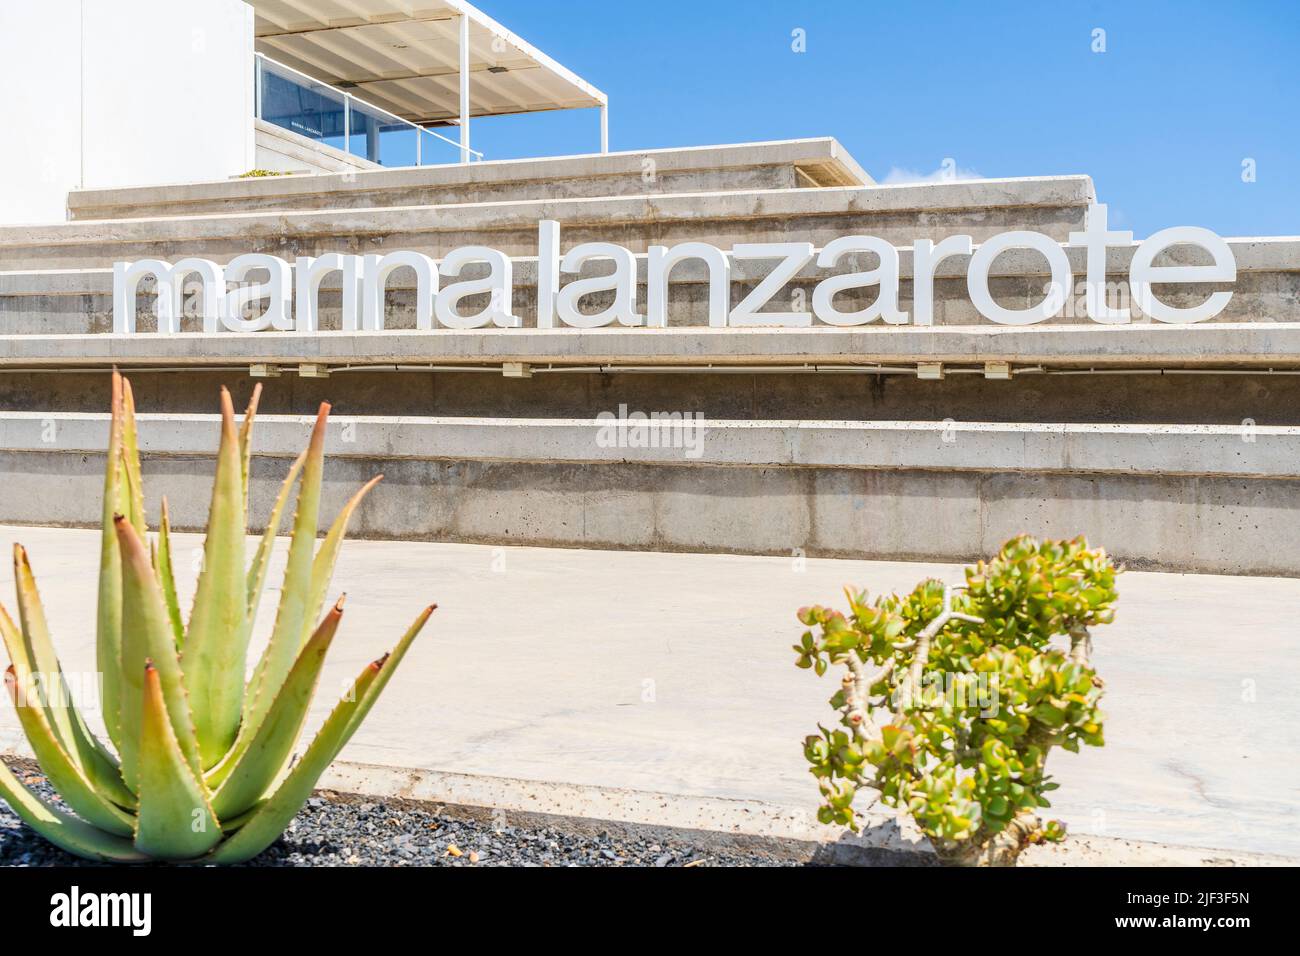 Arquitectura moderna y letrero que dice Marina Lanzarote en Arrecife, capital de Lanzarote, Islas Canarias, España Foto de stock